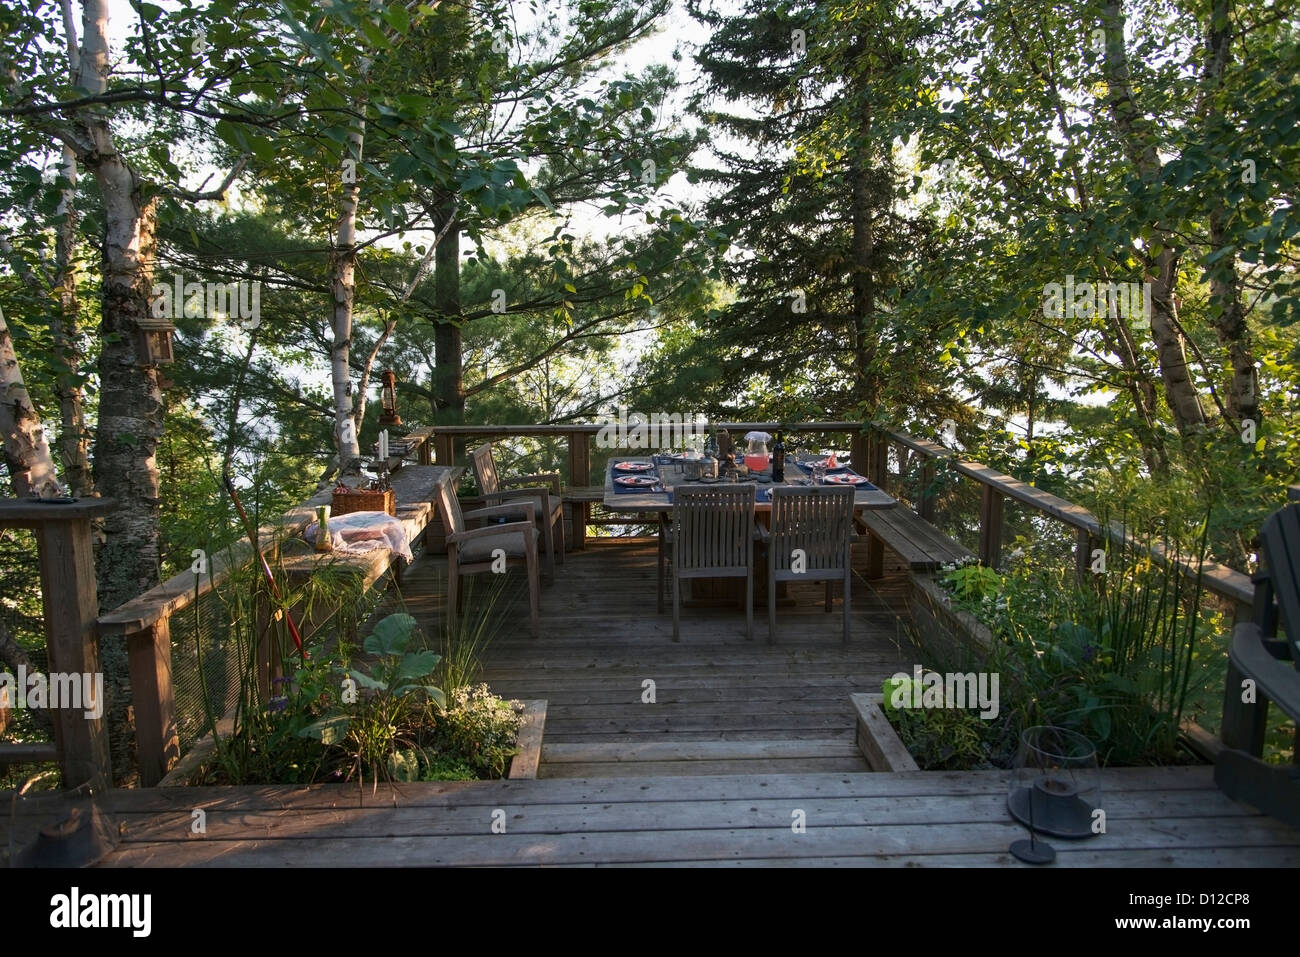 Un set de table pour un repas sur une terrasse en bois entourée d'arbres d'un lac ; le lac des Bois Ontario Canada Banque D'Images